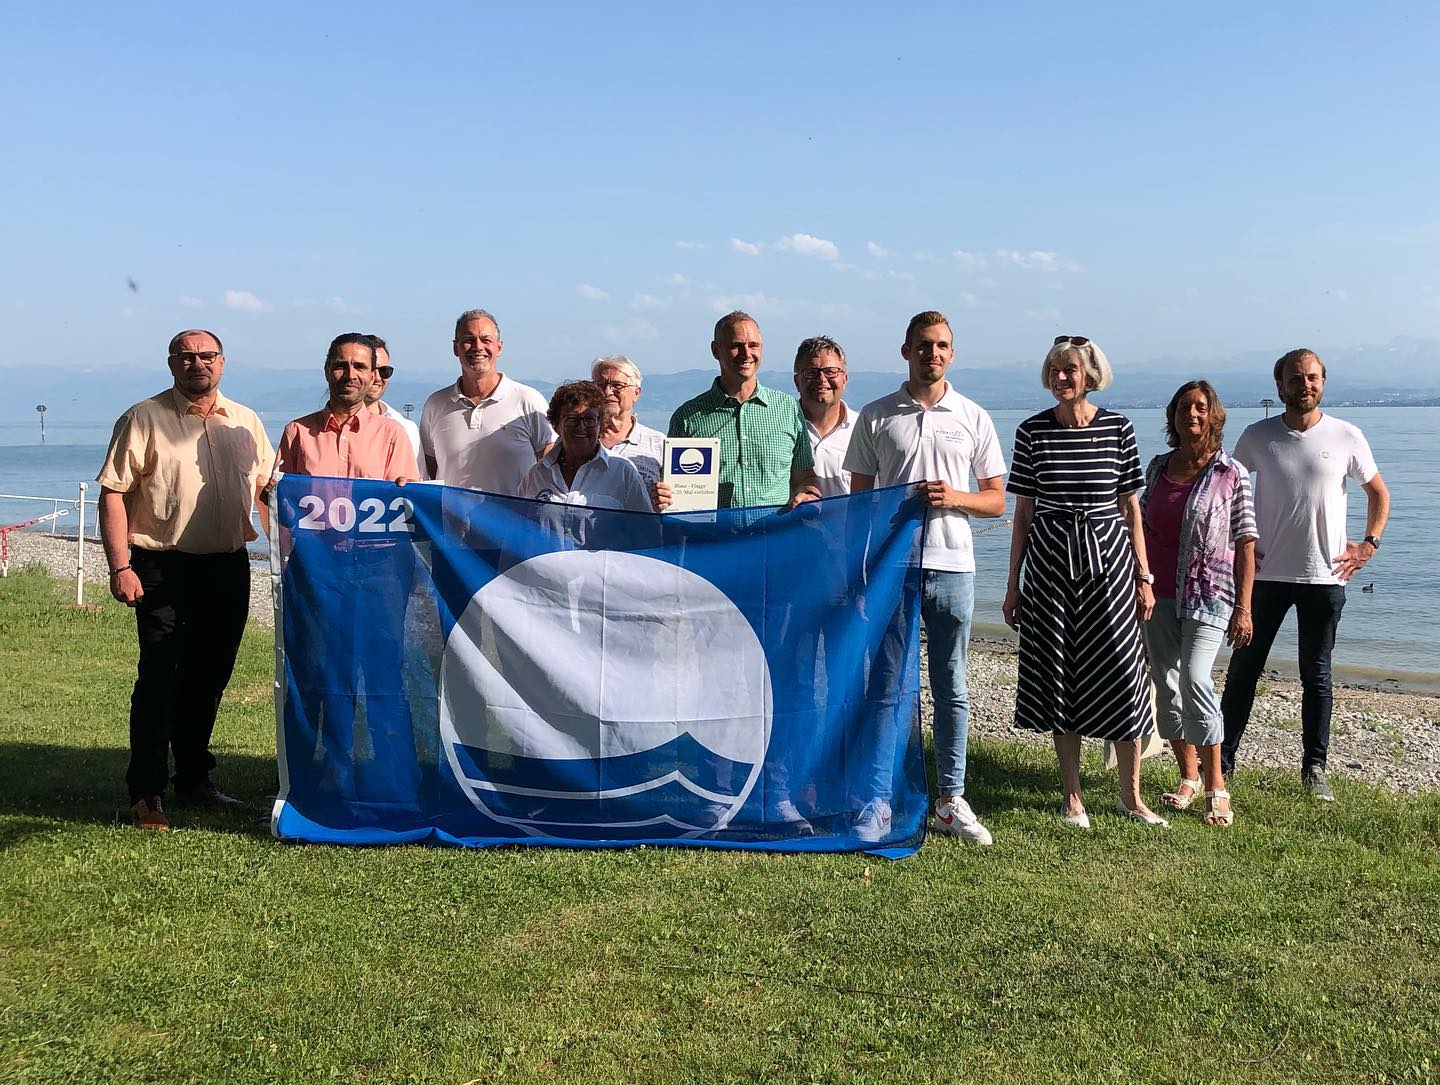 Verleihung der blauen Flagge in Immenstaad am Bodensee